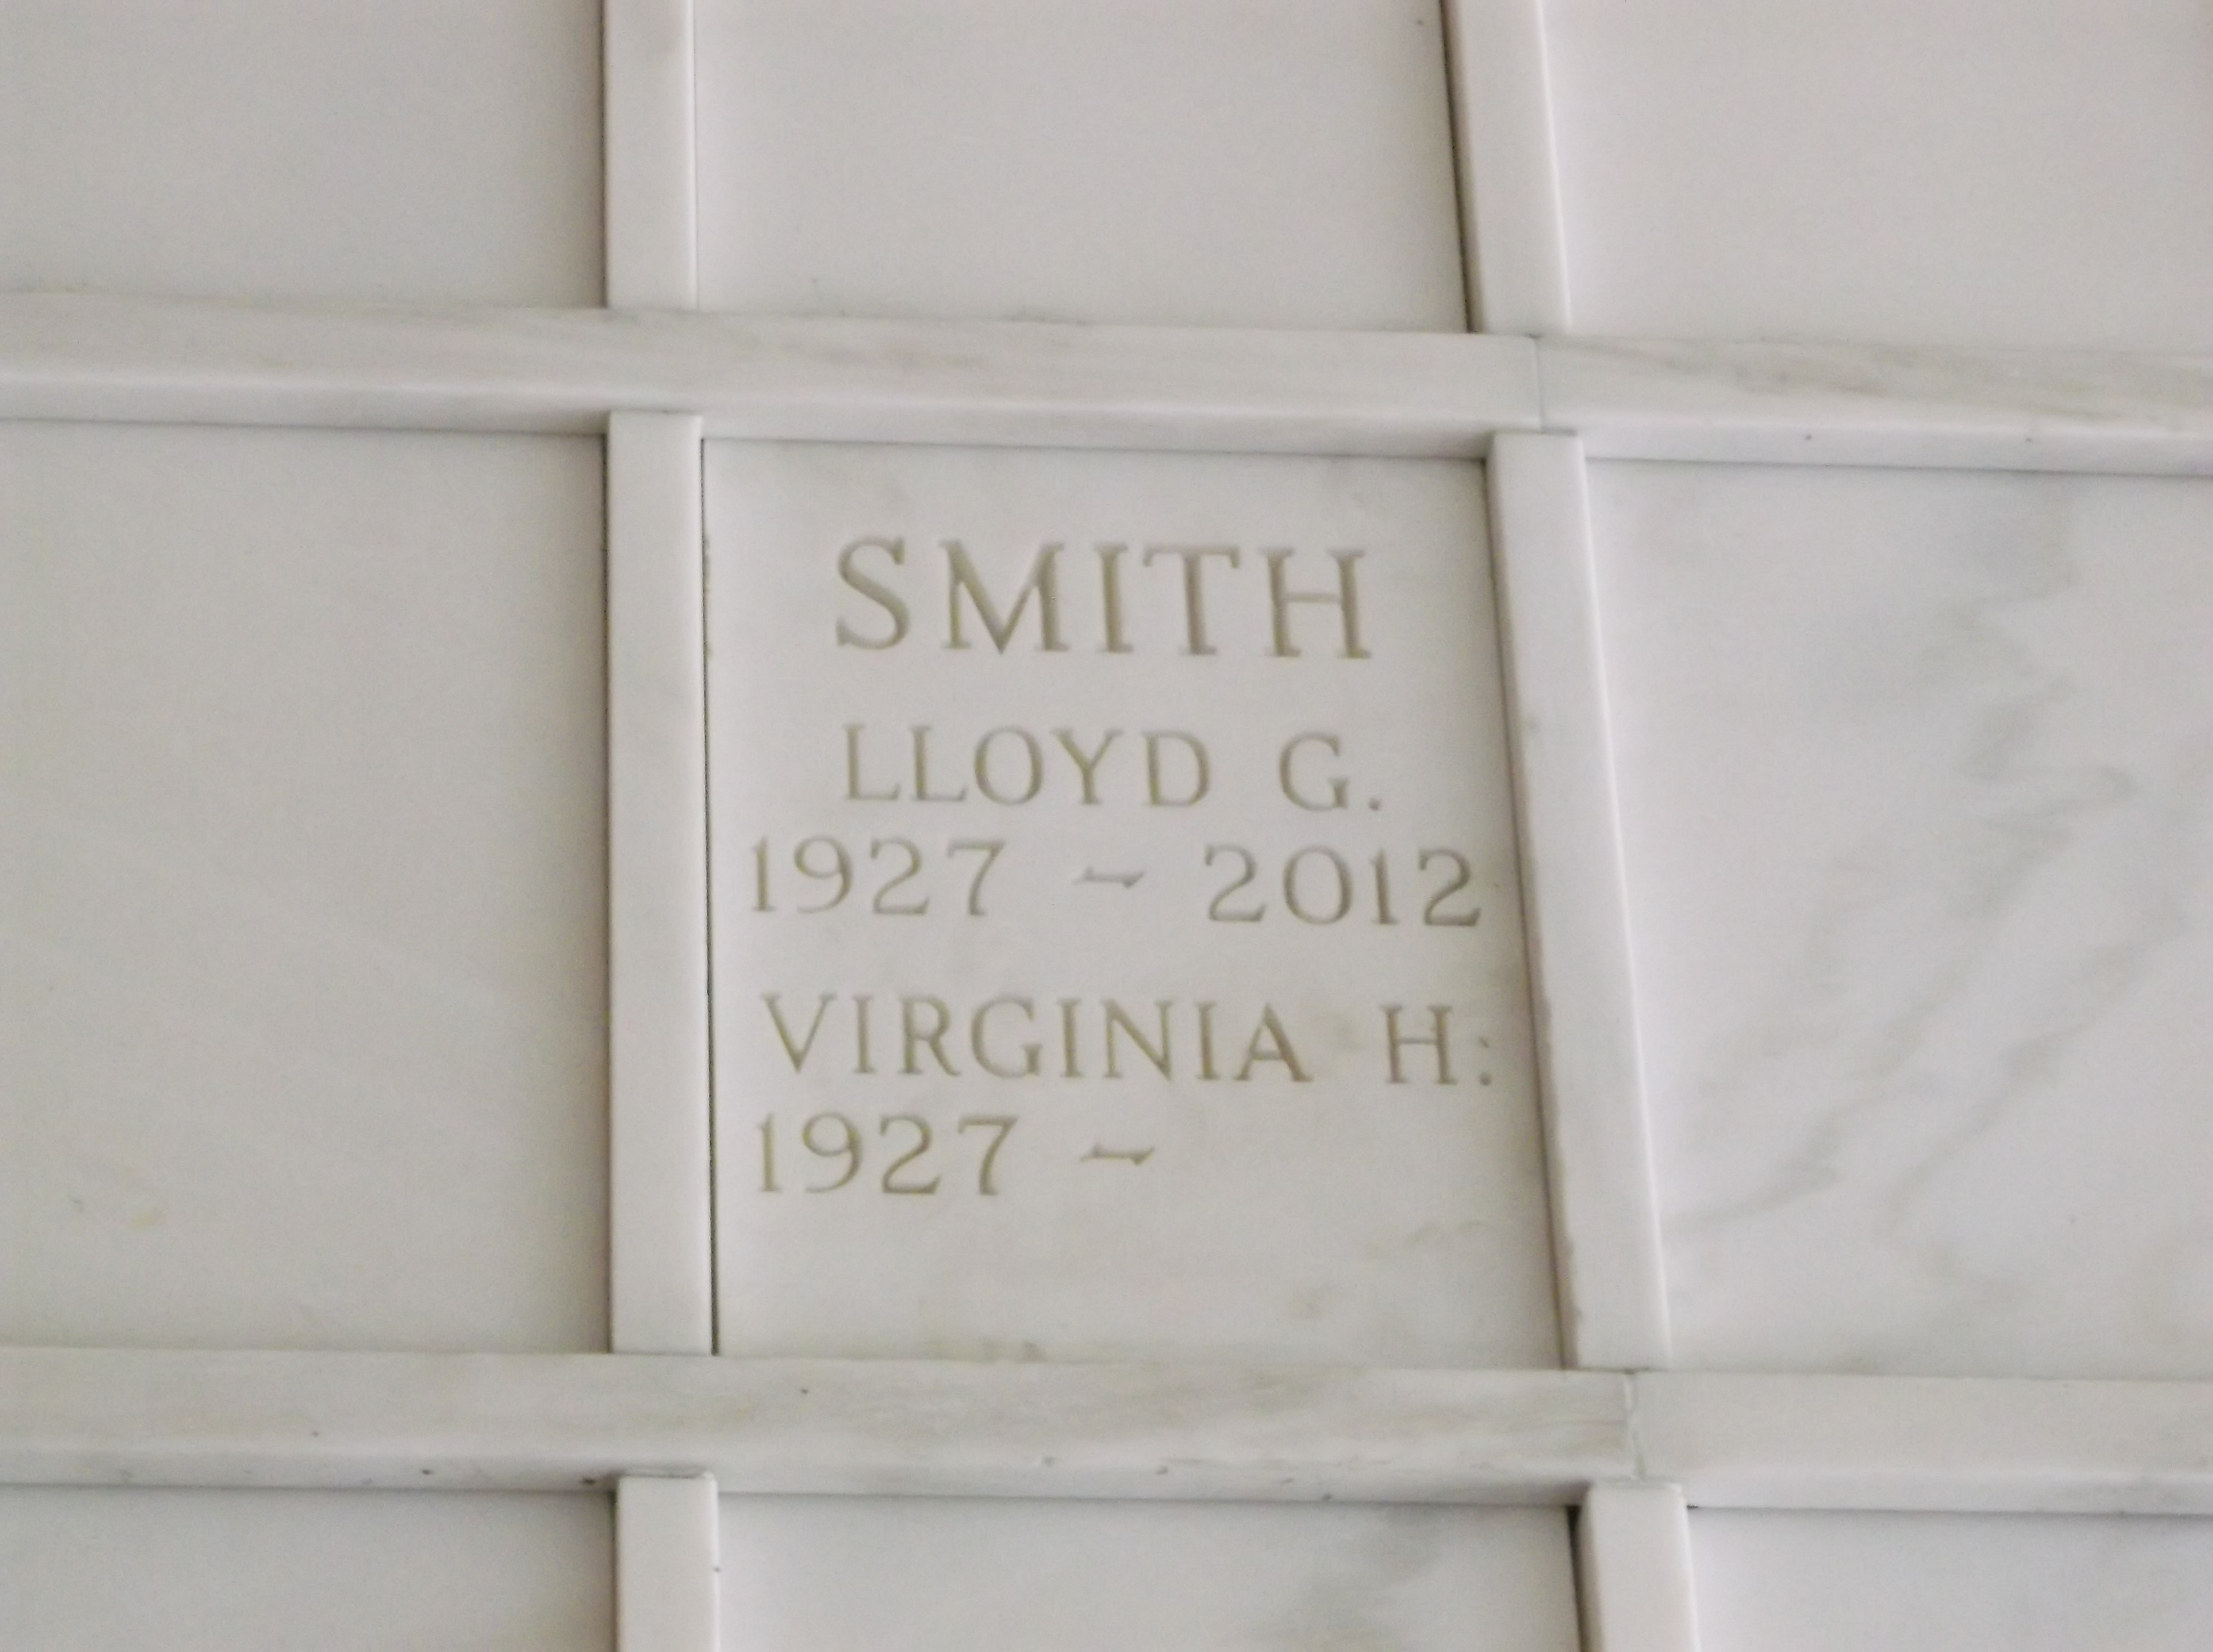 Lloyd G Smith